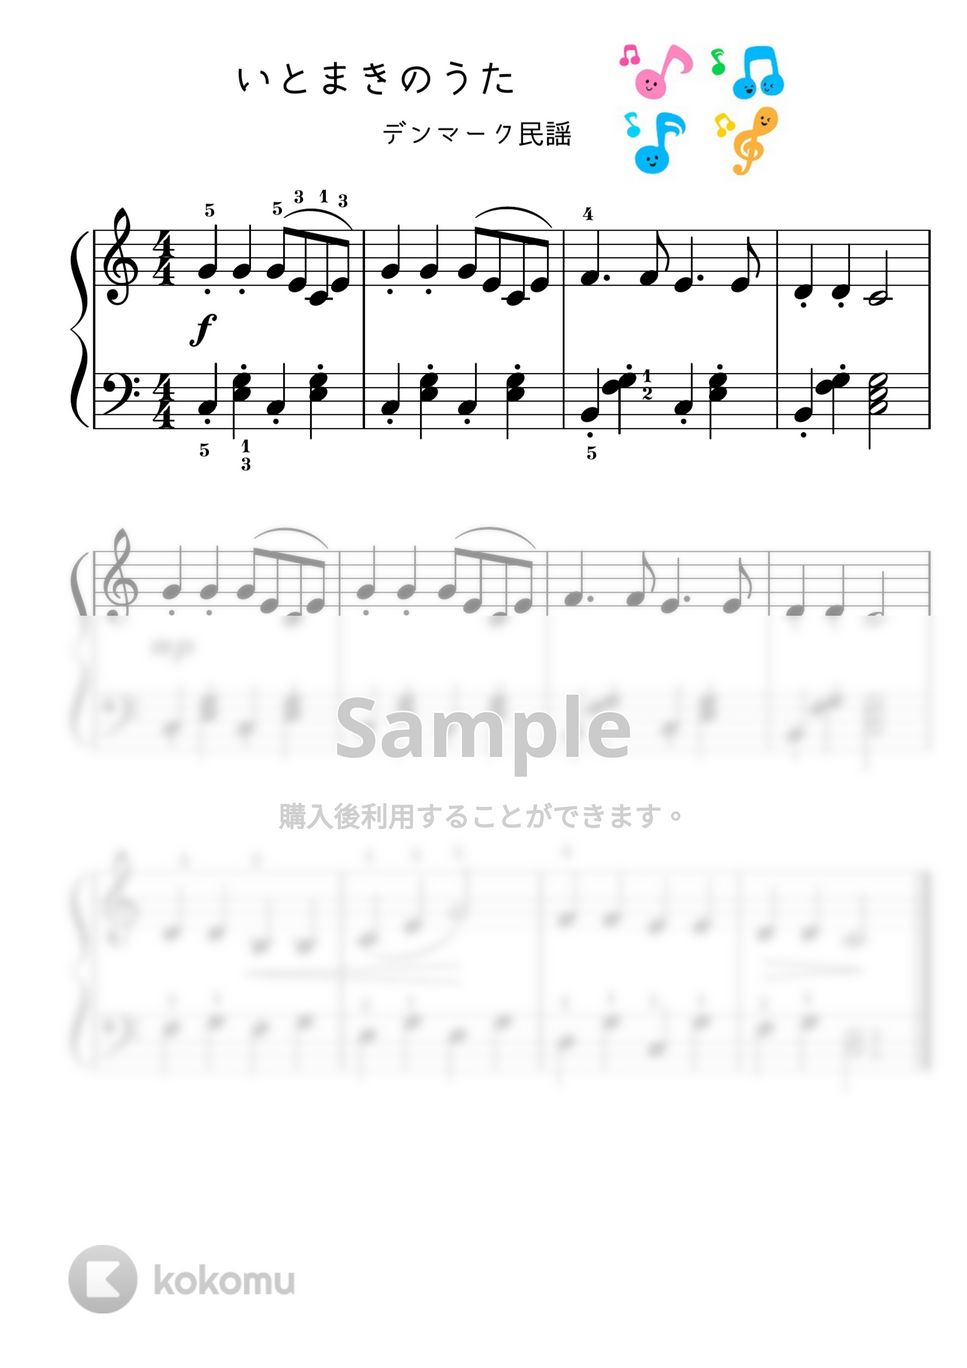 【初級】いとまきのうた/移調の練習セット♪ (童謡) by ピアノのせんせいの楽譜集